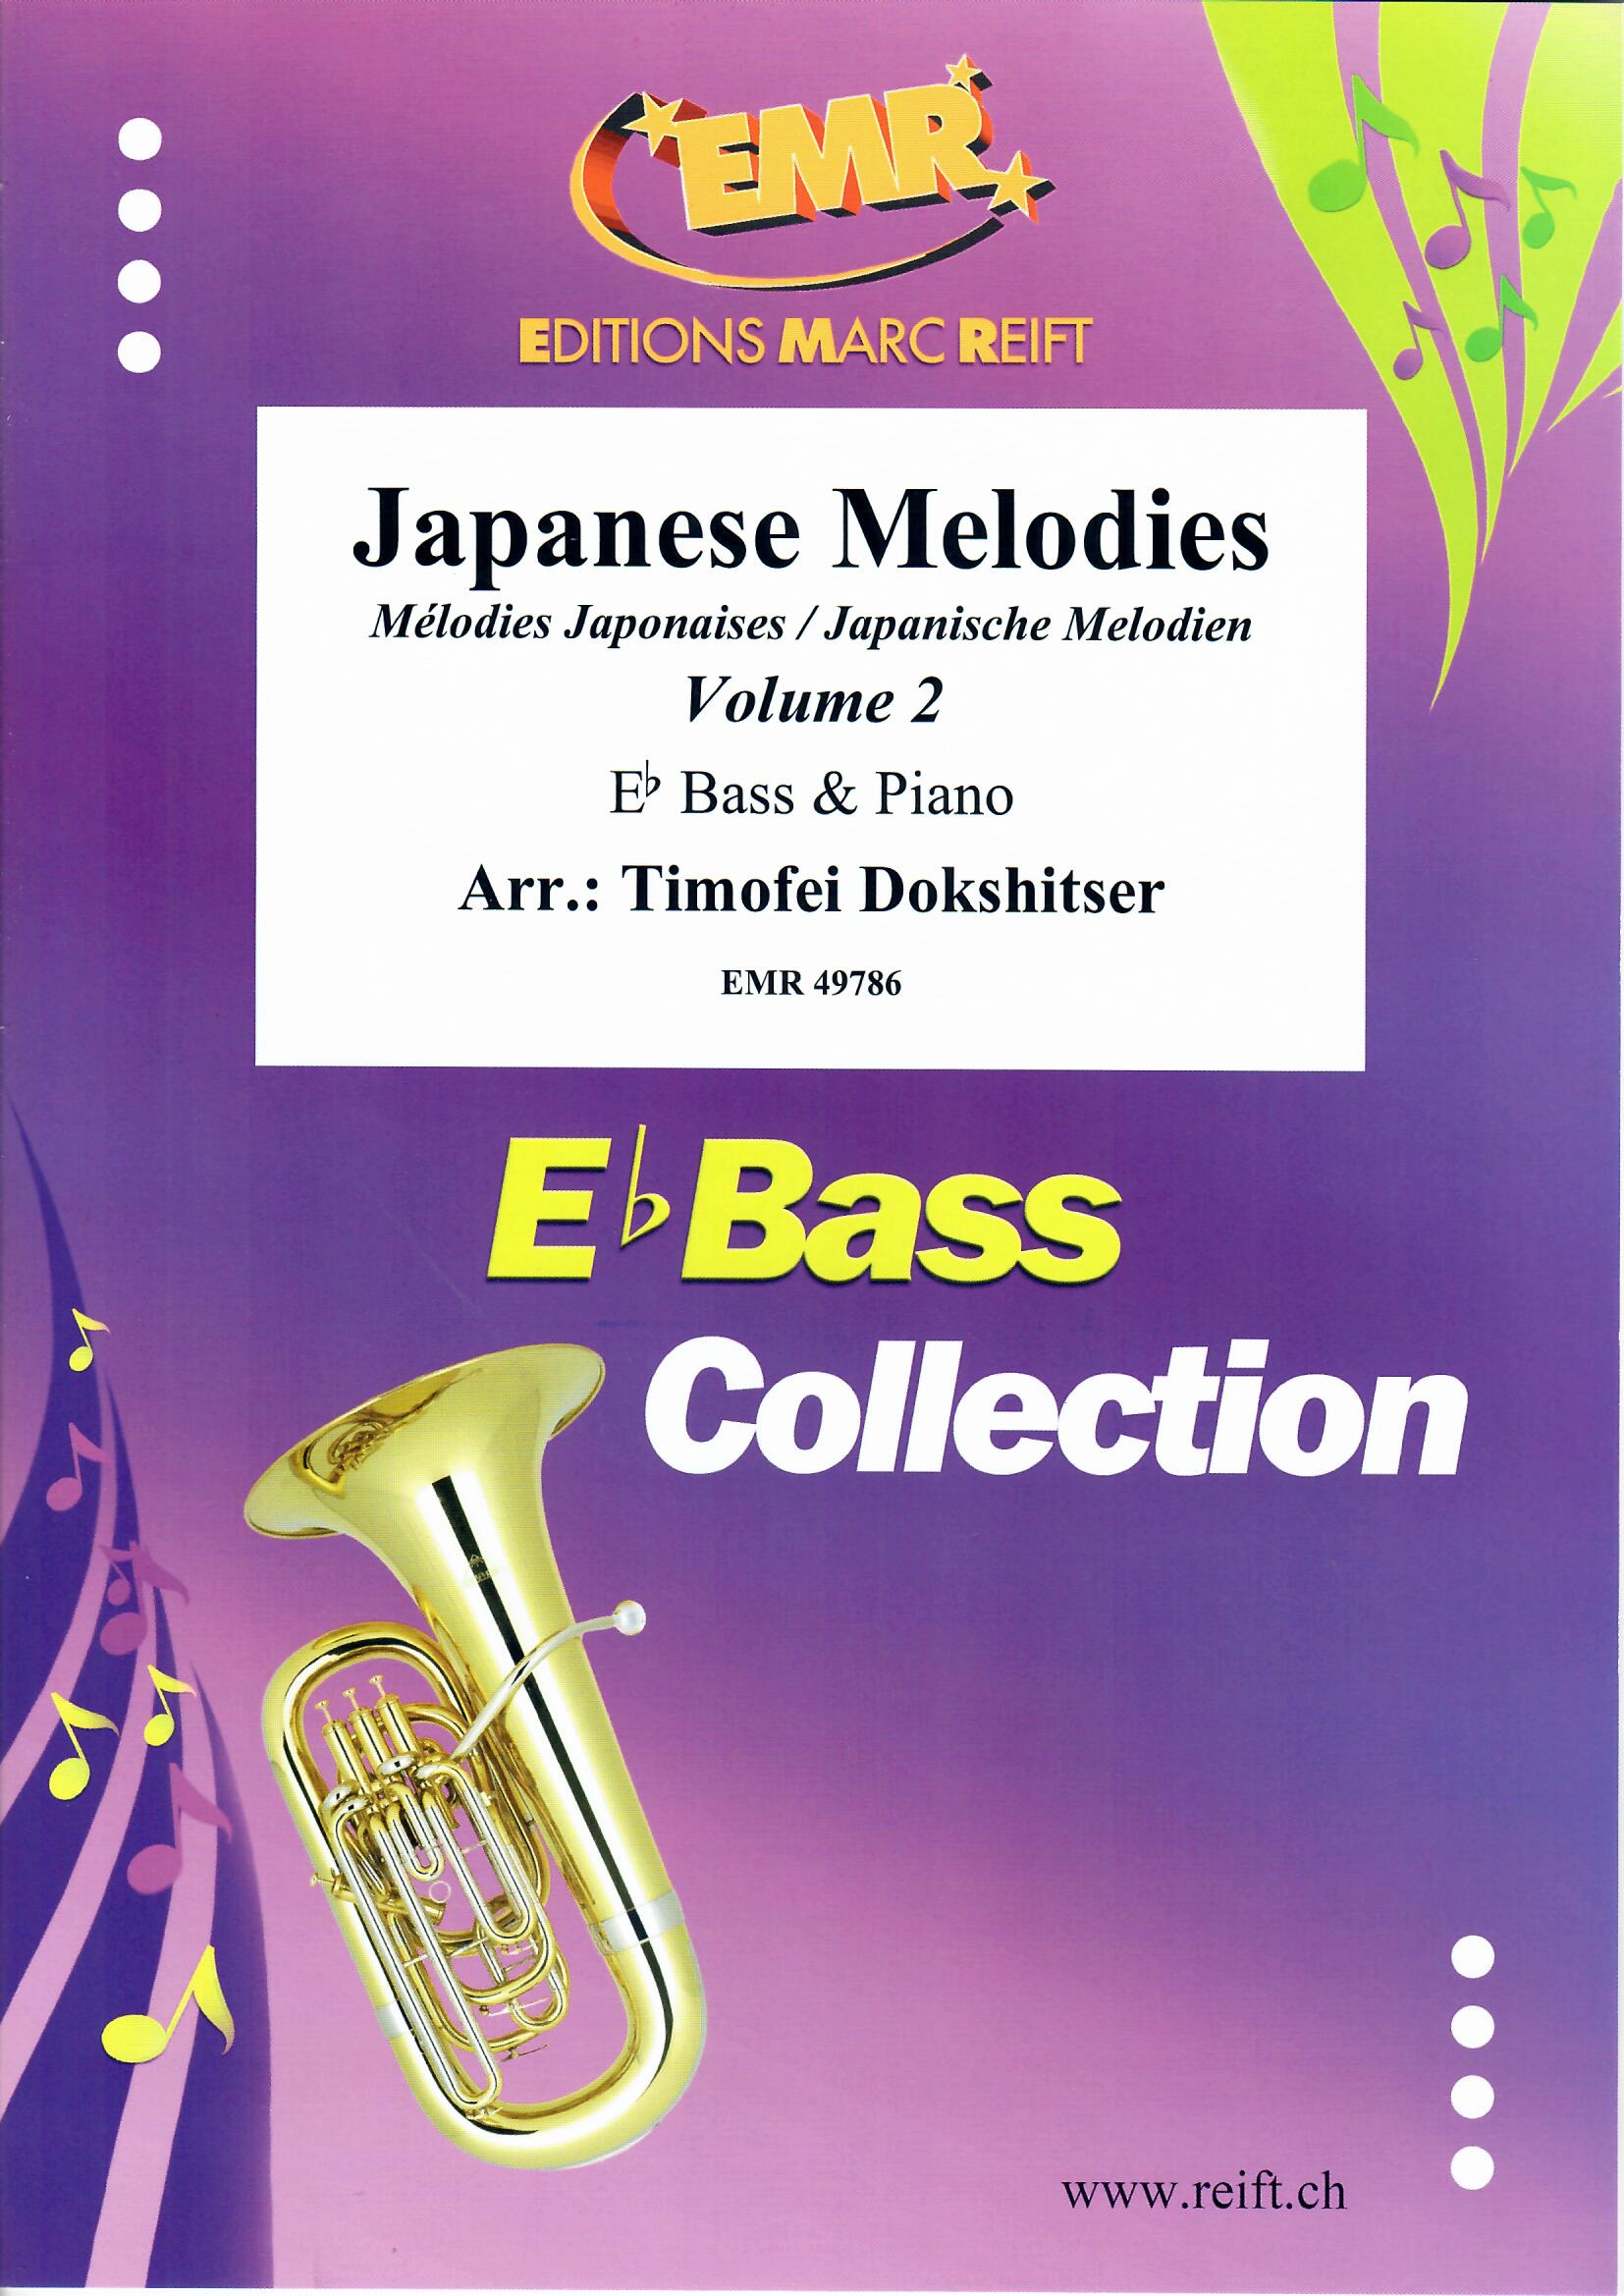 JAPANESE MELODIES VOL. 2 - Eb Basds & Piano